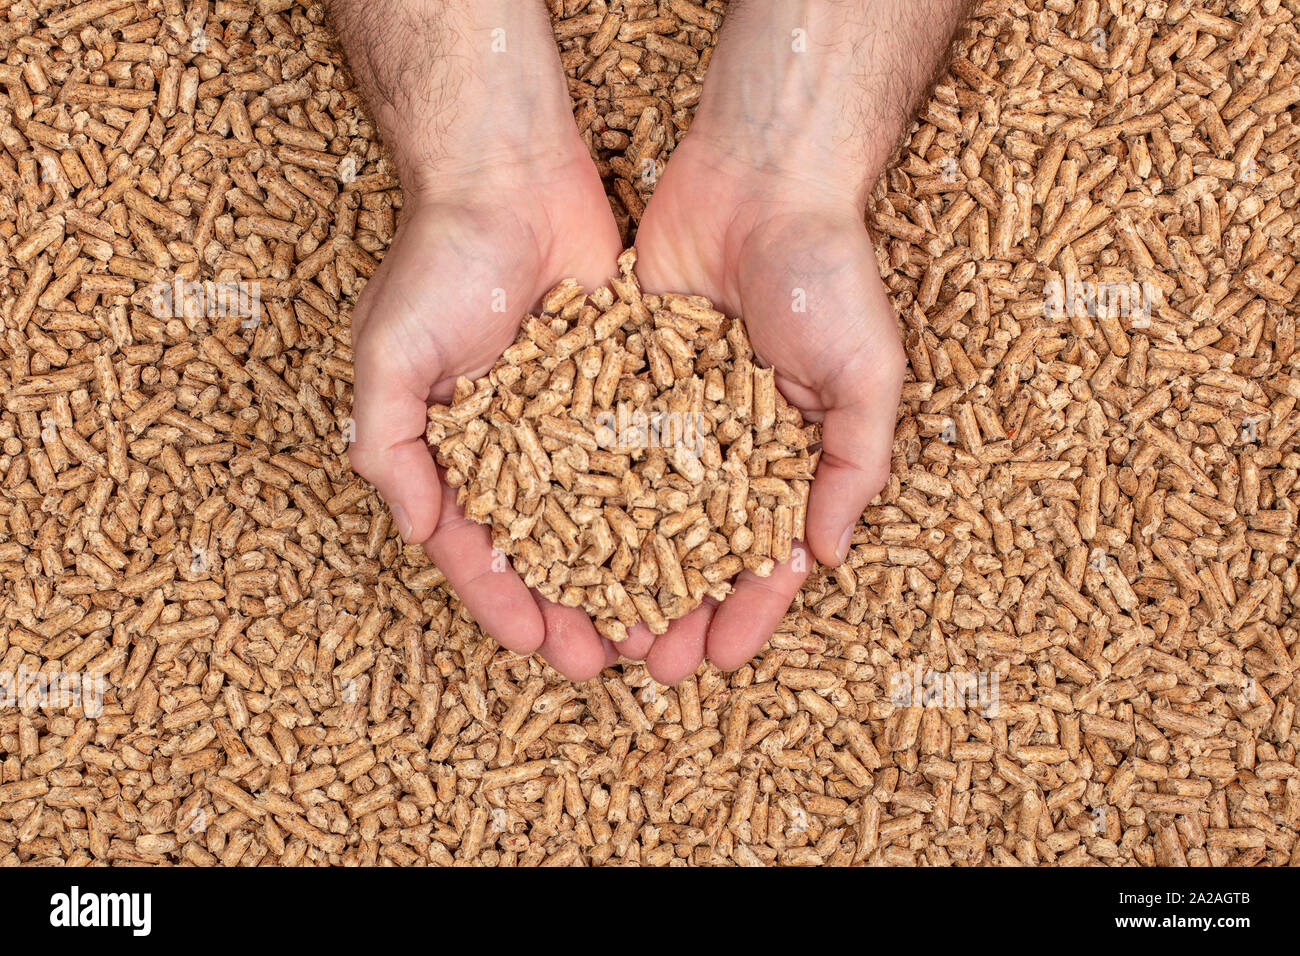 Detalle de las manos mostrando pellets de madera. El concepto de biomasa y combustibles alternativos. Foto de stock